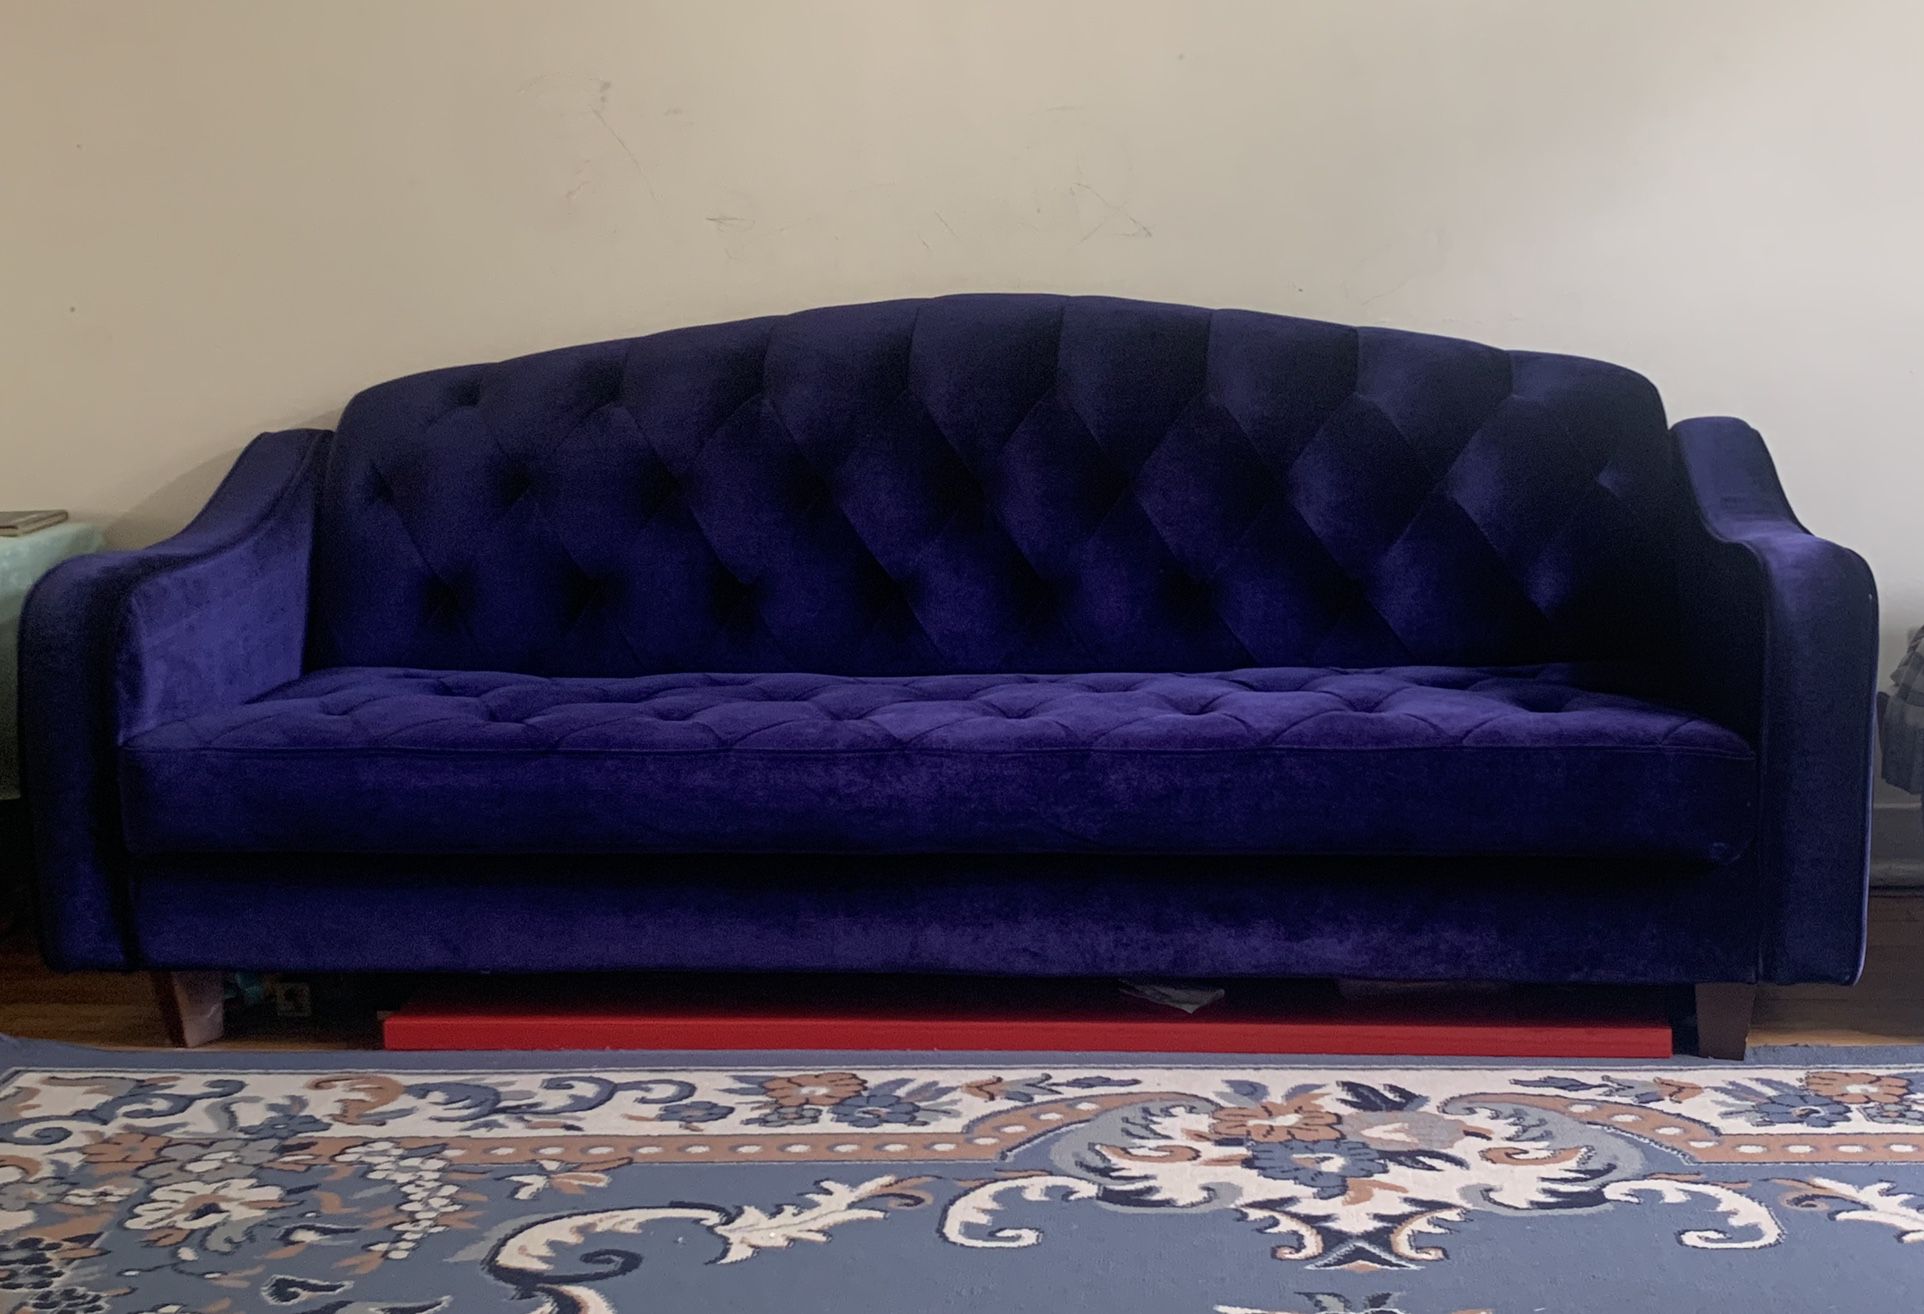 Urban Outfitters Ava Sleeper Sofa - Velvet blue